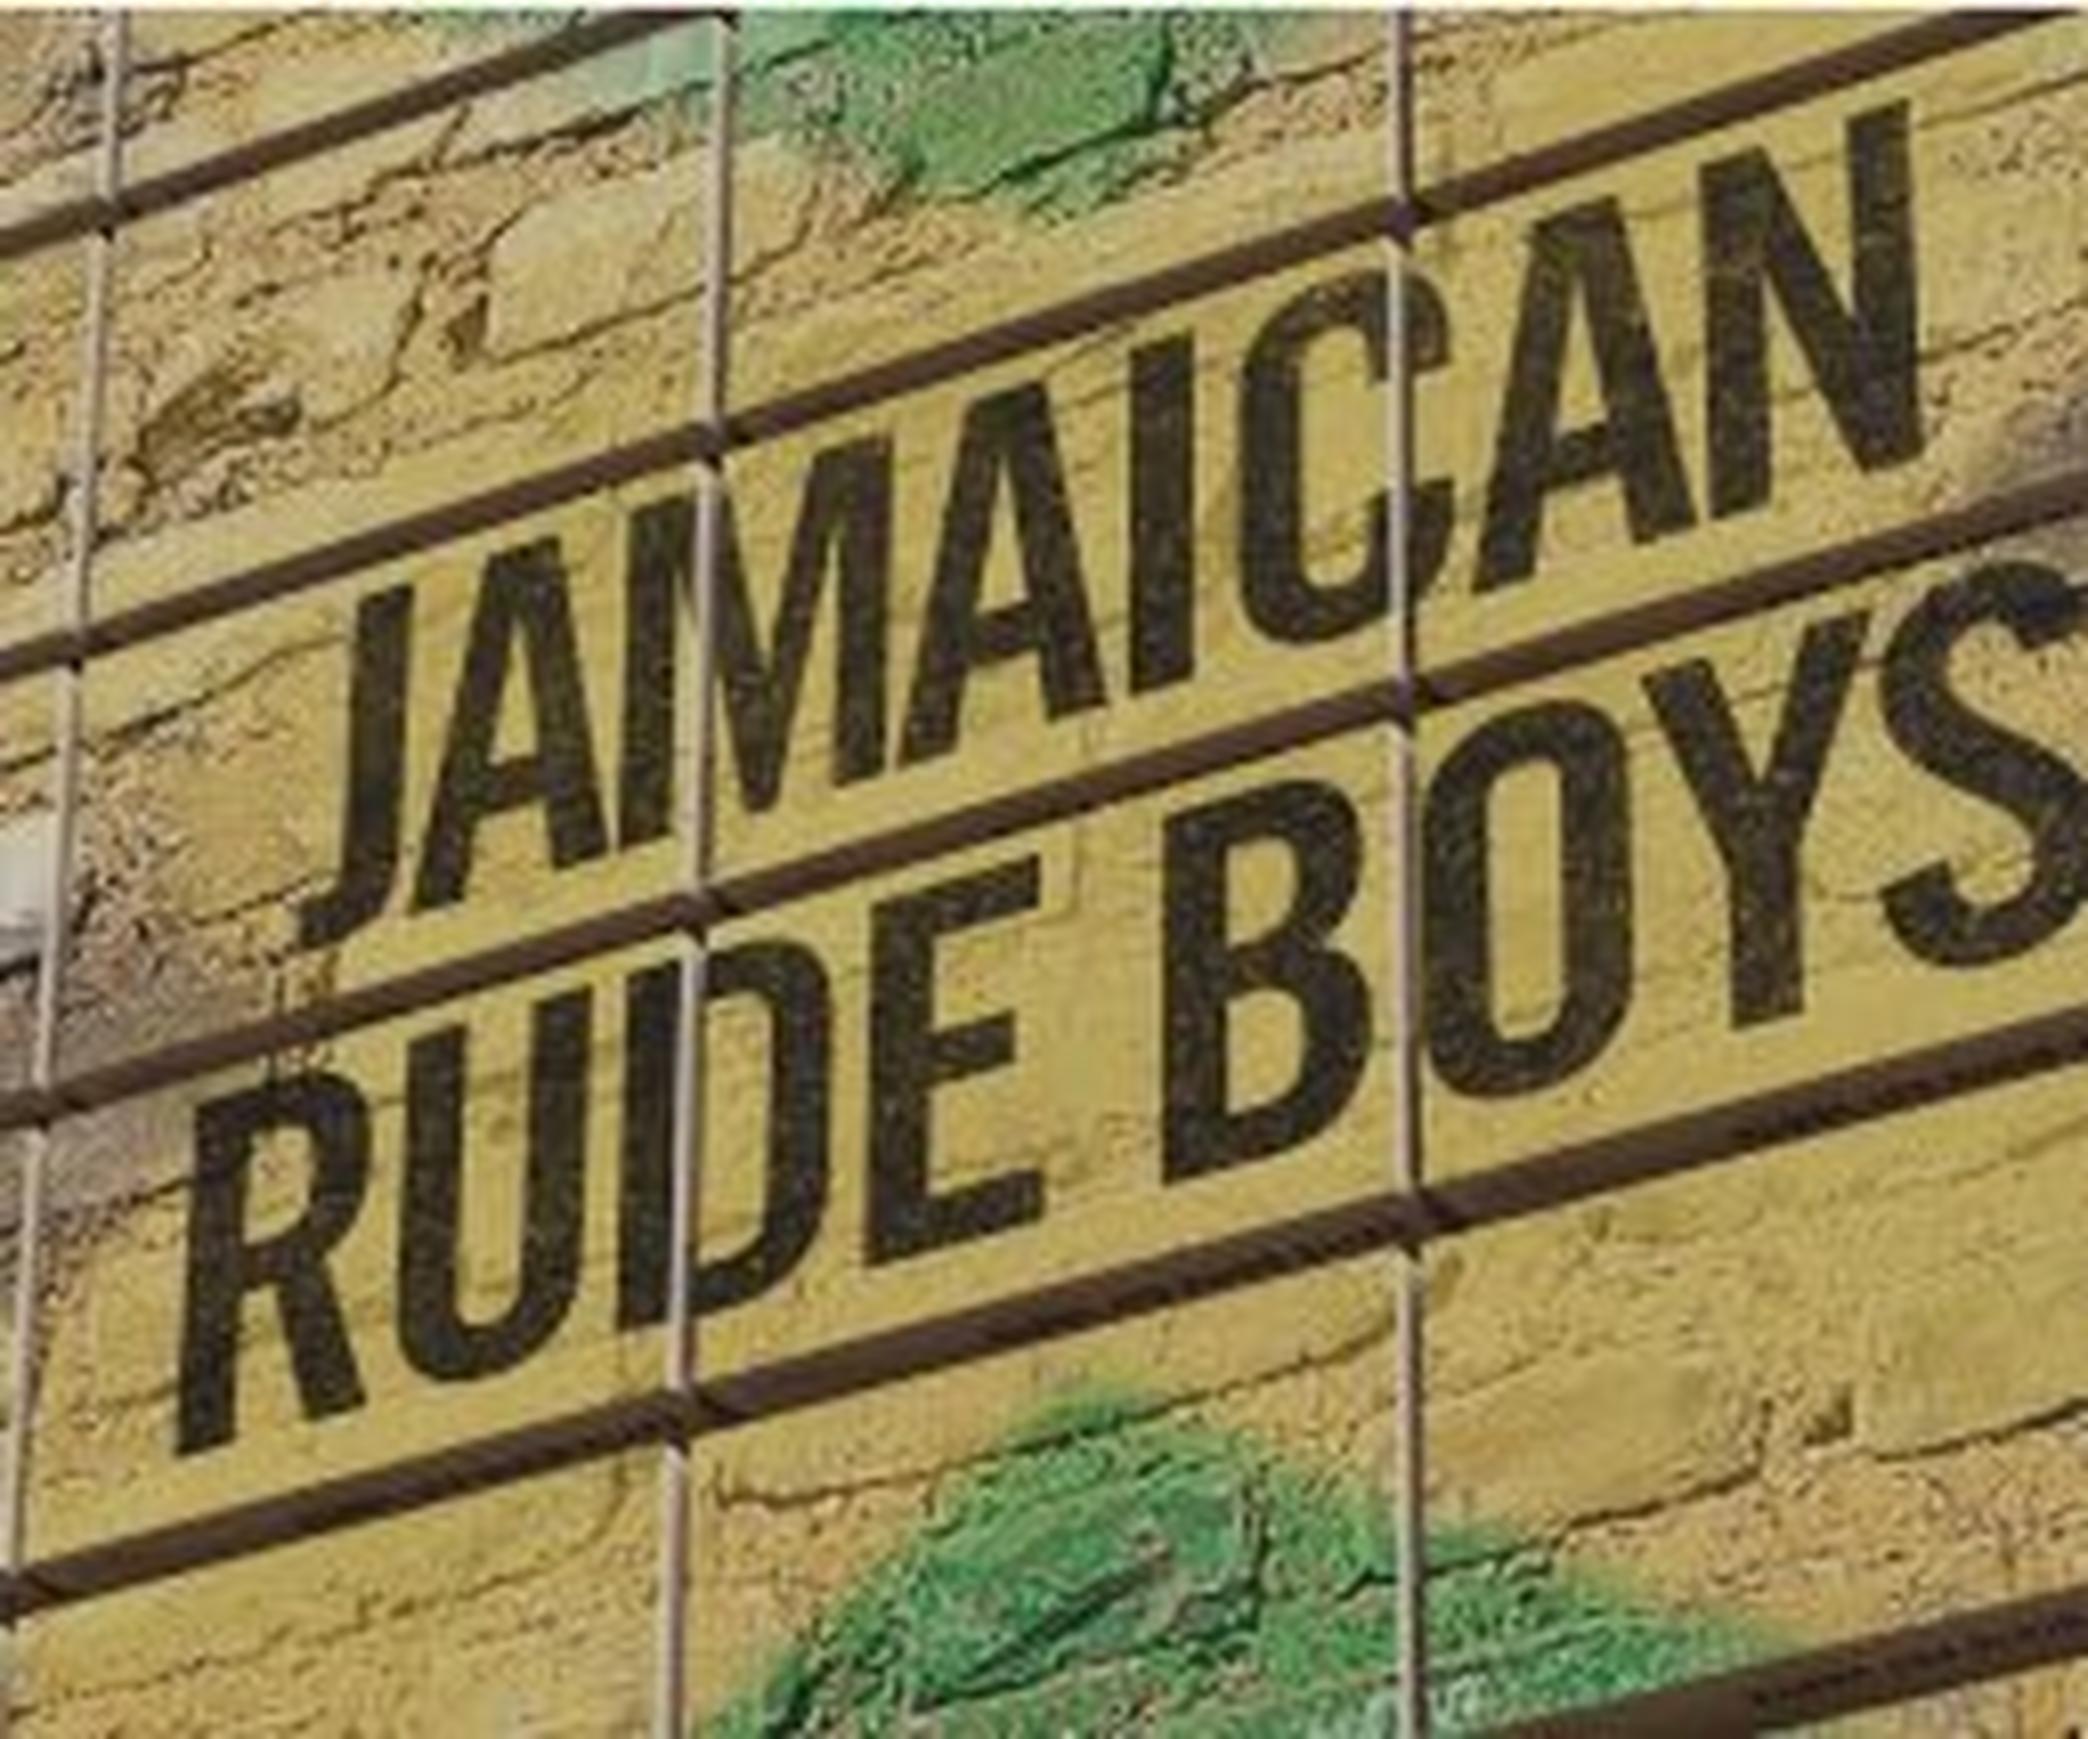 Jamaican Rude Boys